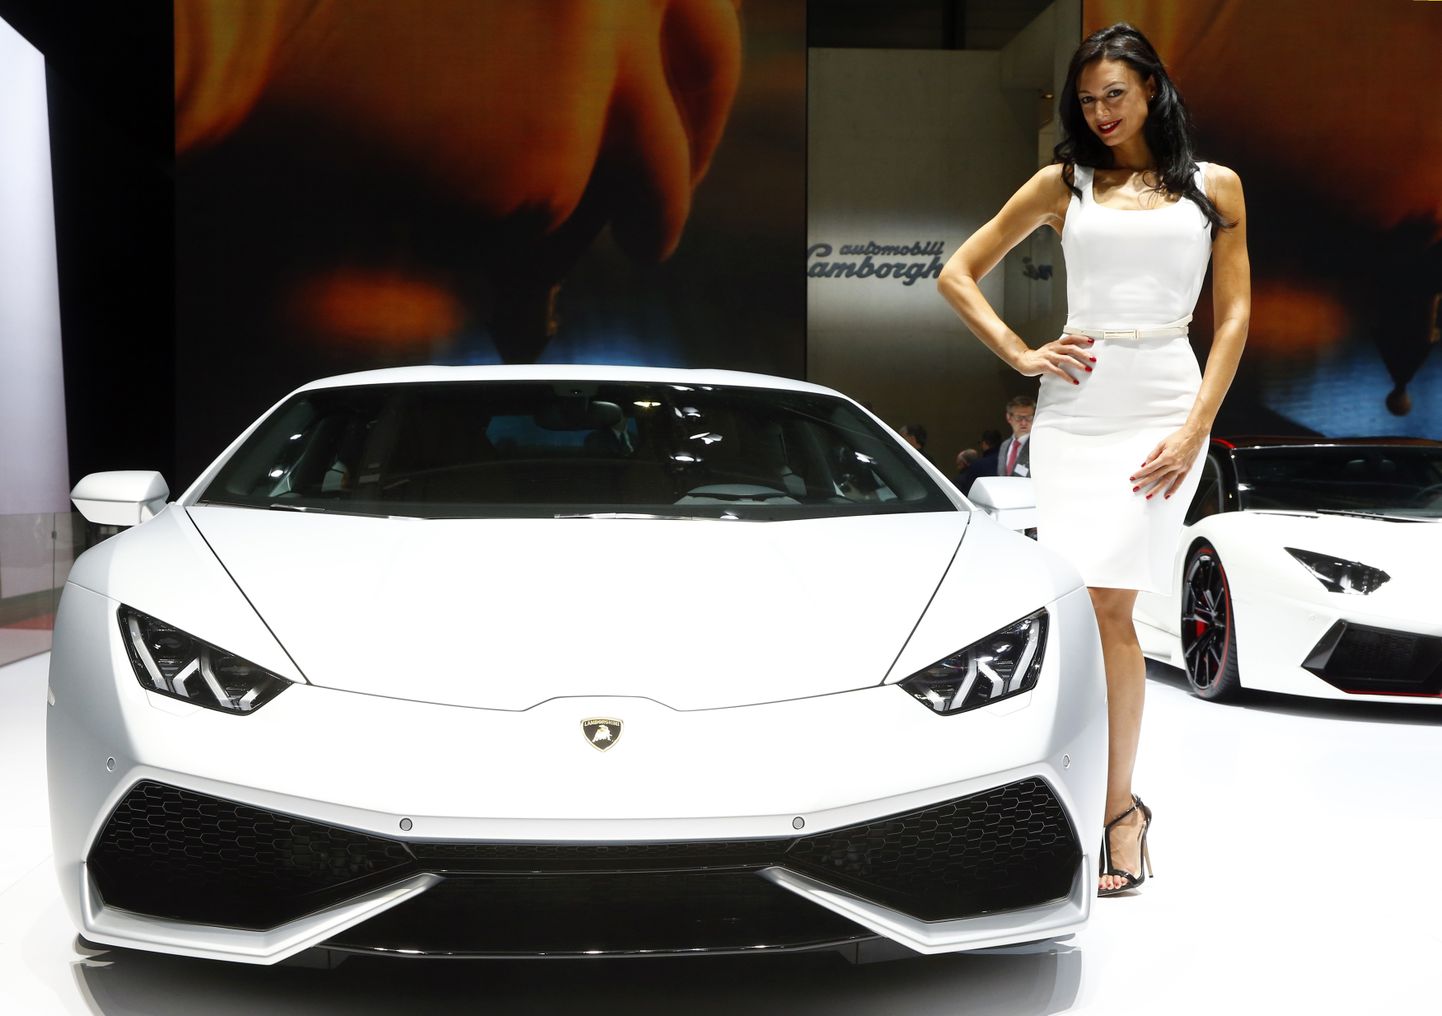 Modell poseerib Lamborghini Aventador LP 700-4 auto kõrval. Pilt on illustreeriv.